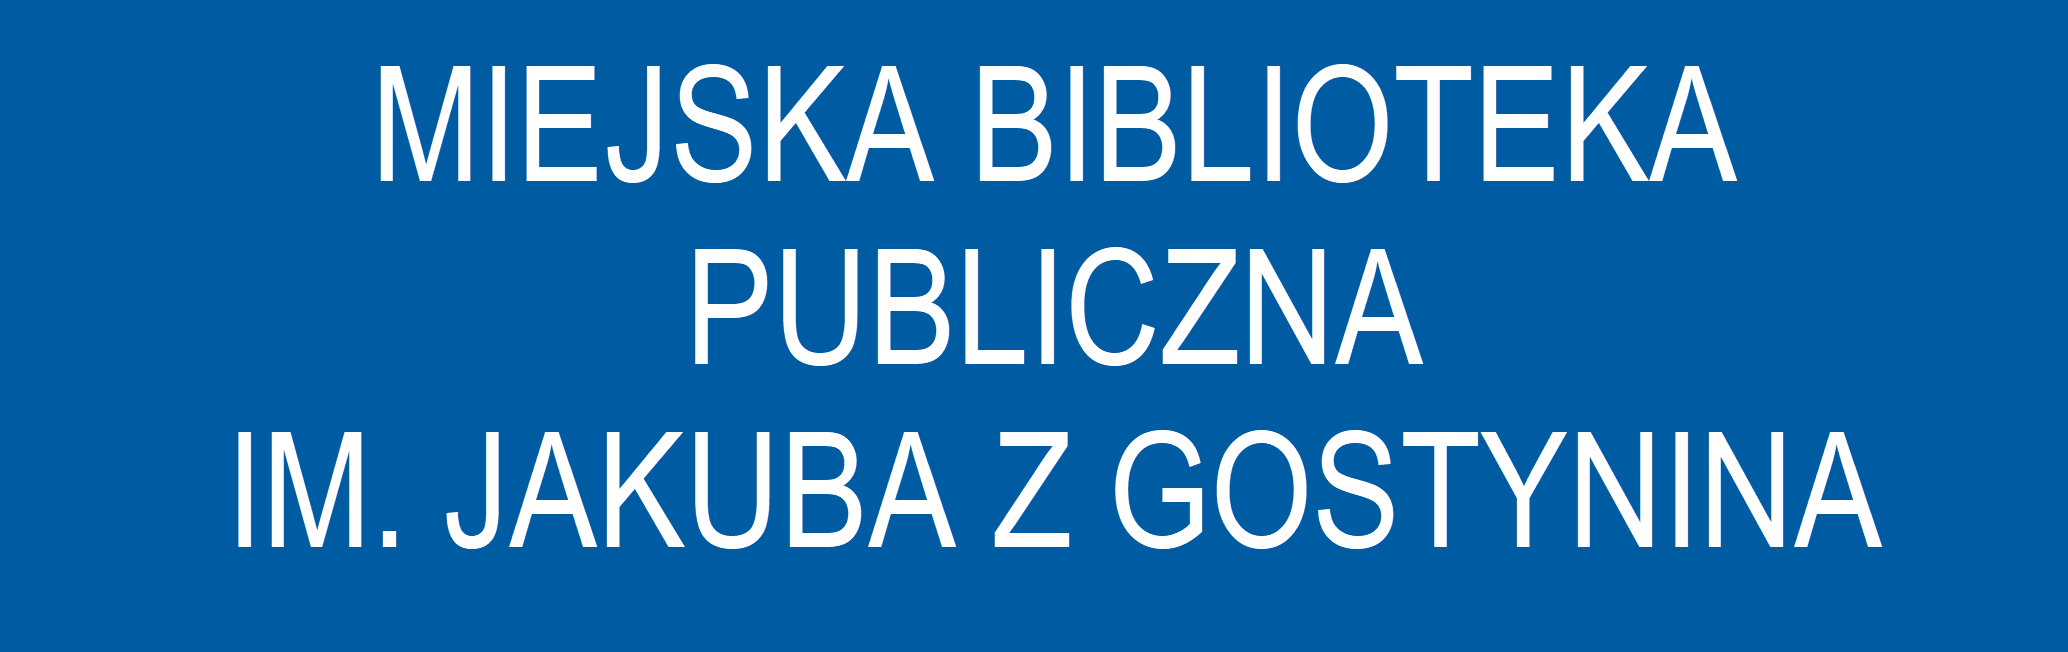 Miejska Biblioteka Publiczna im. Jakuba z Gostynina